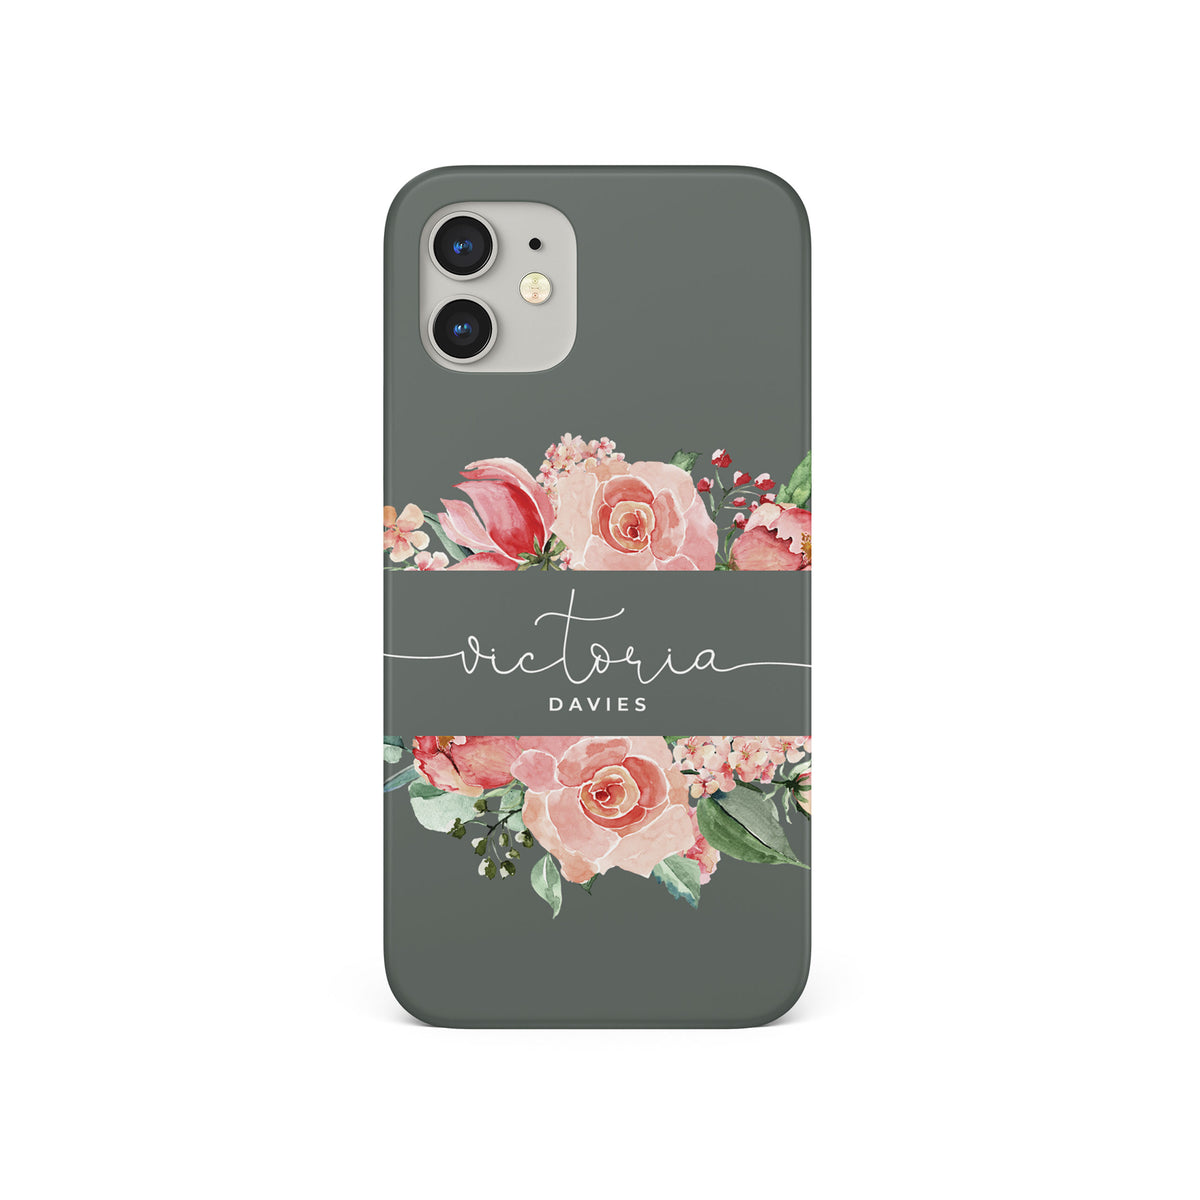 Personalised Hard Phone Case Custom Name Grey Floral Rose Bloom